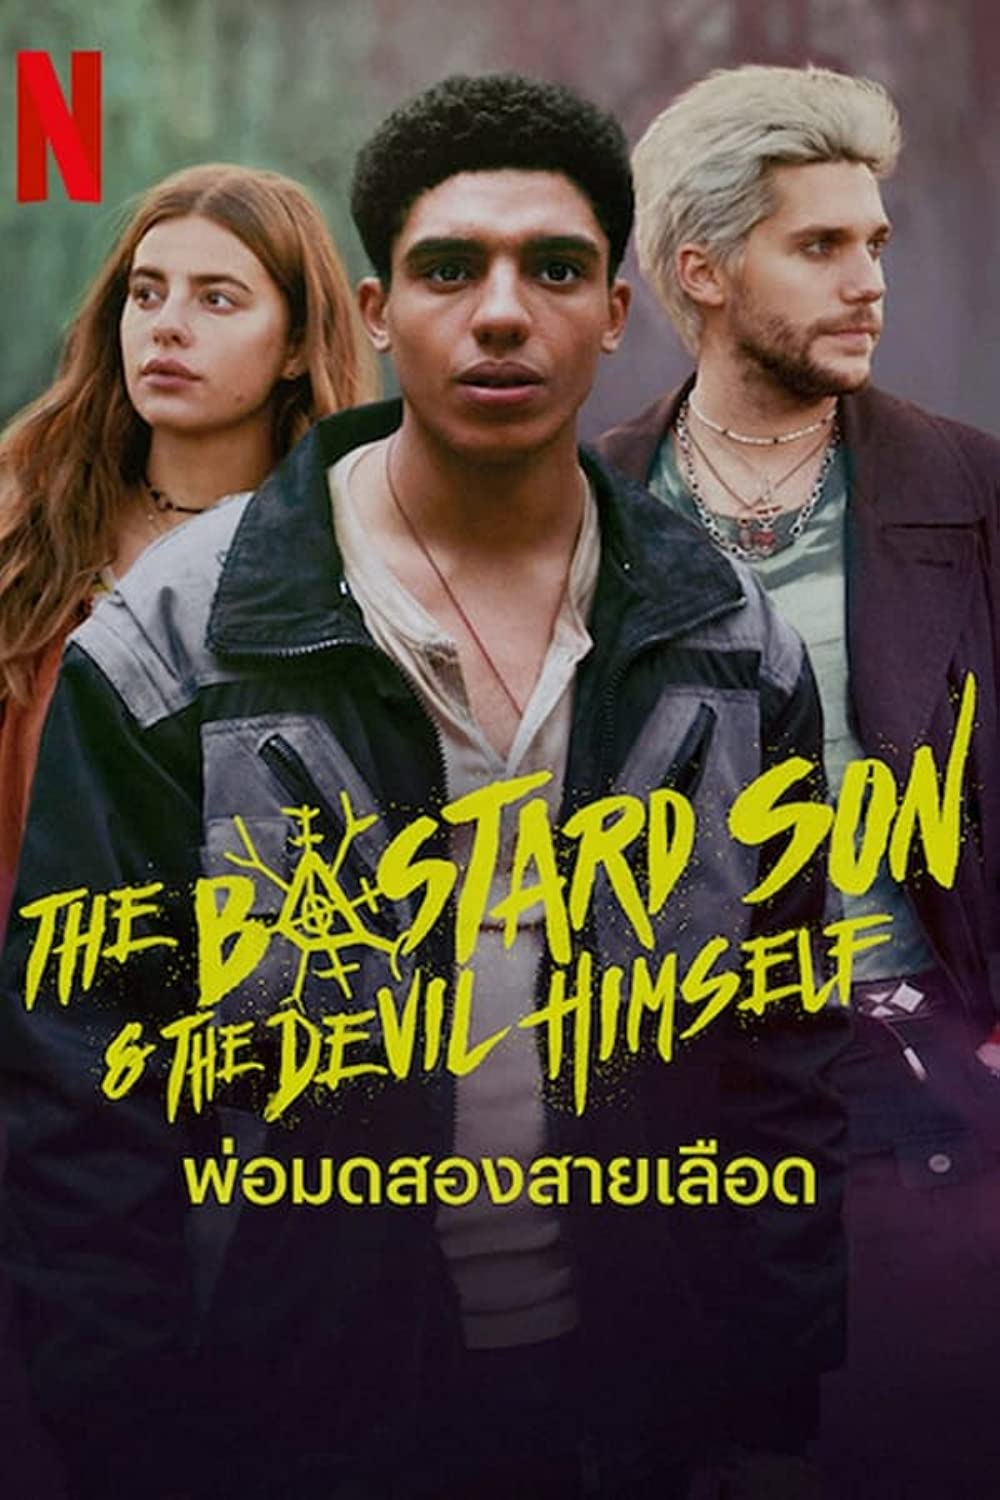 مسلسل The Bastard Son & The Devil Himself الموسم 1 الحلقة 4 مترجمة